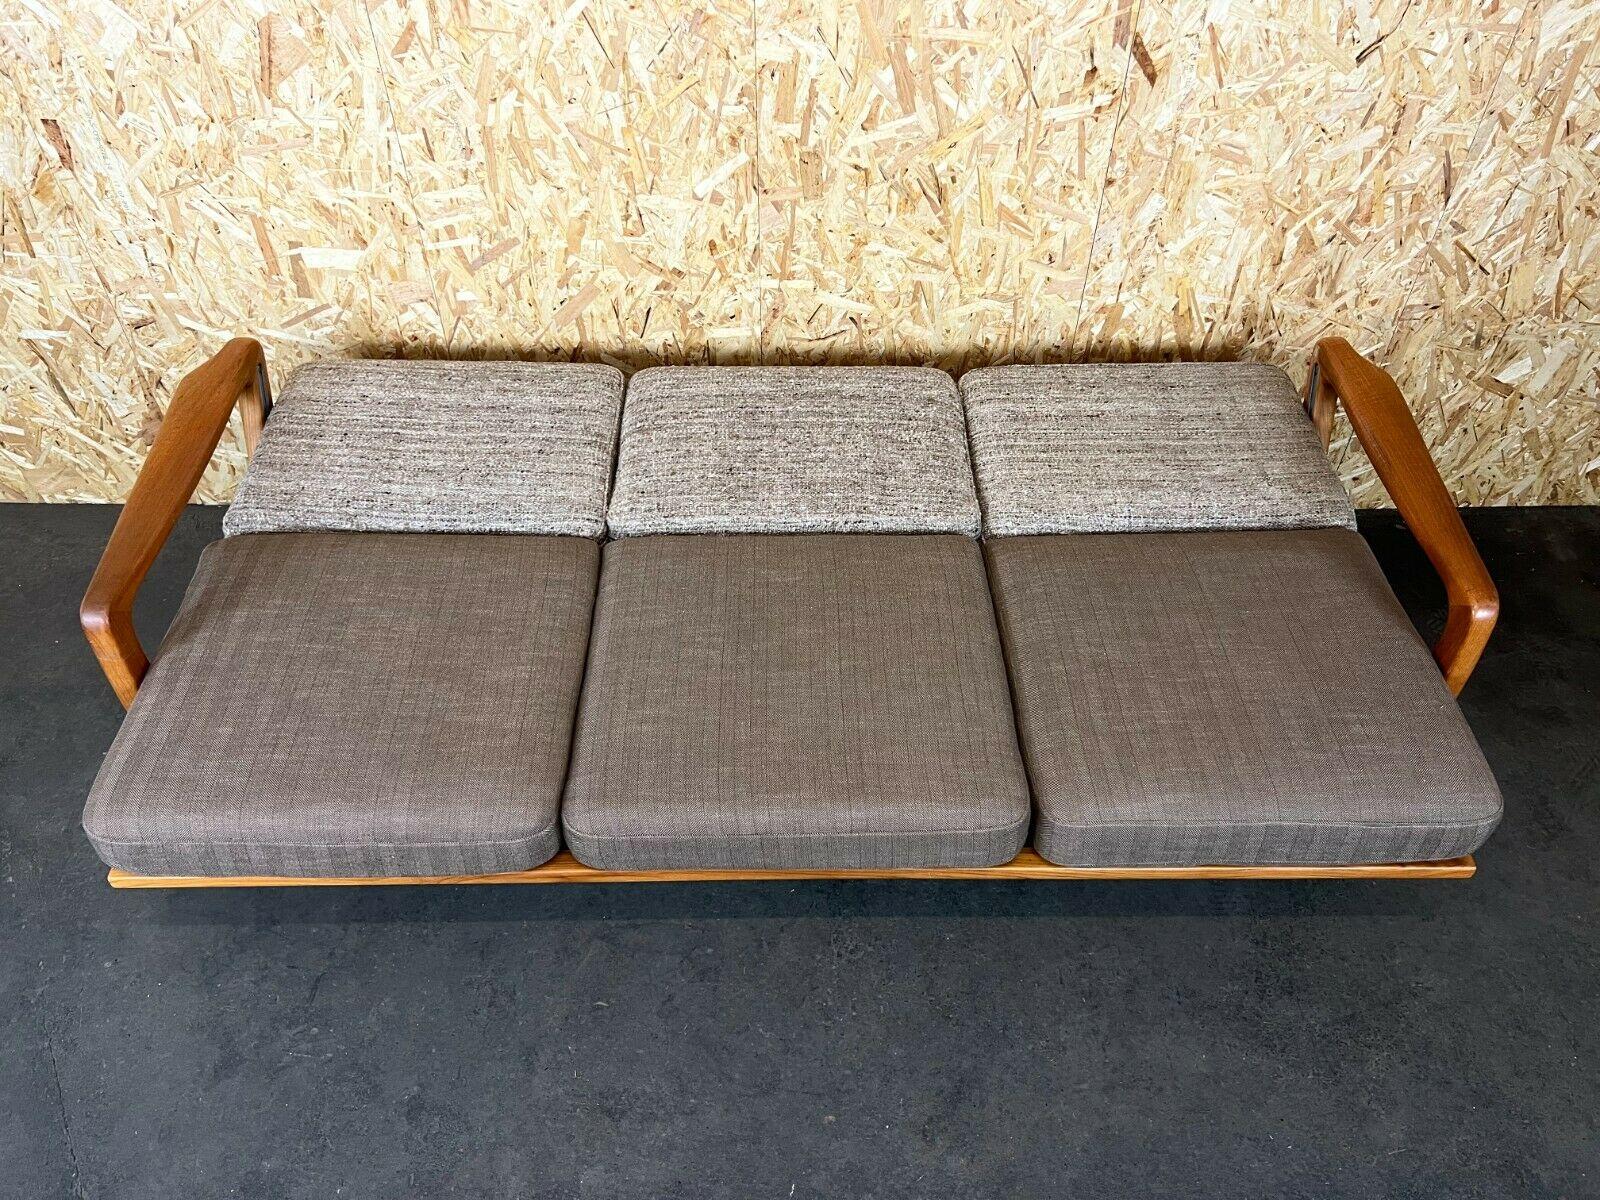 Coucheuse de canapé en teck J. Kristensen Danish Denmark Design, années 60 70  2